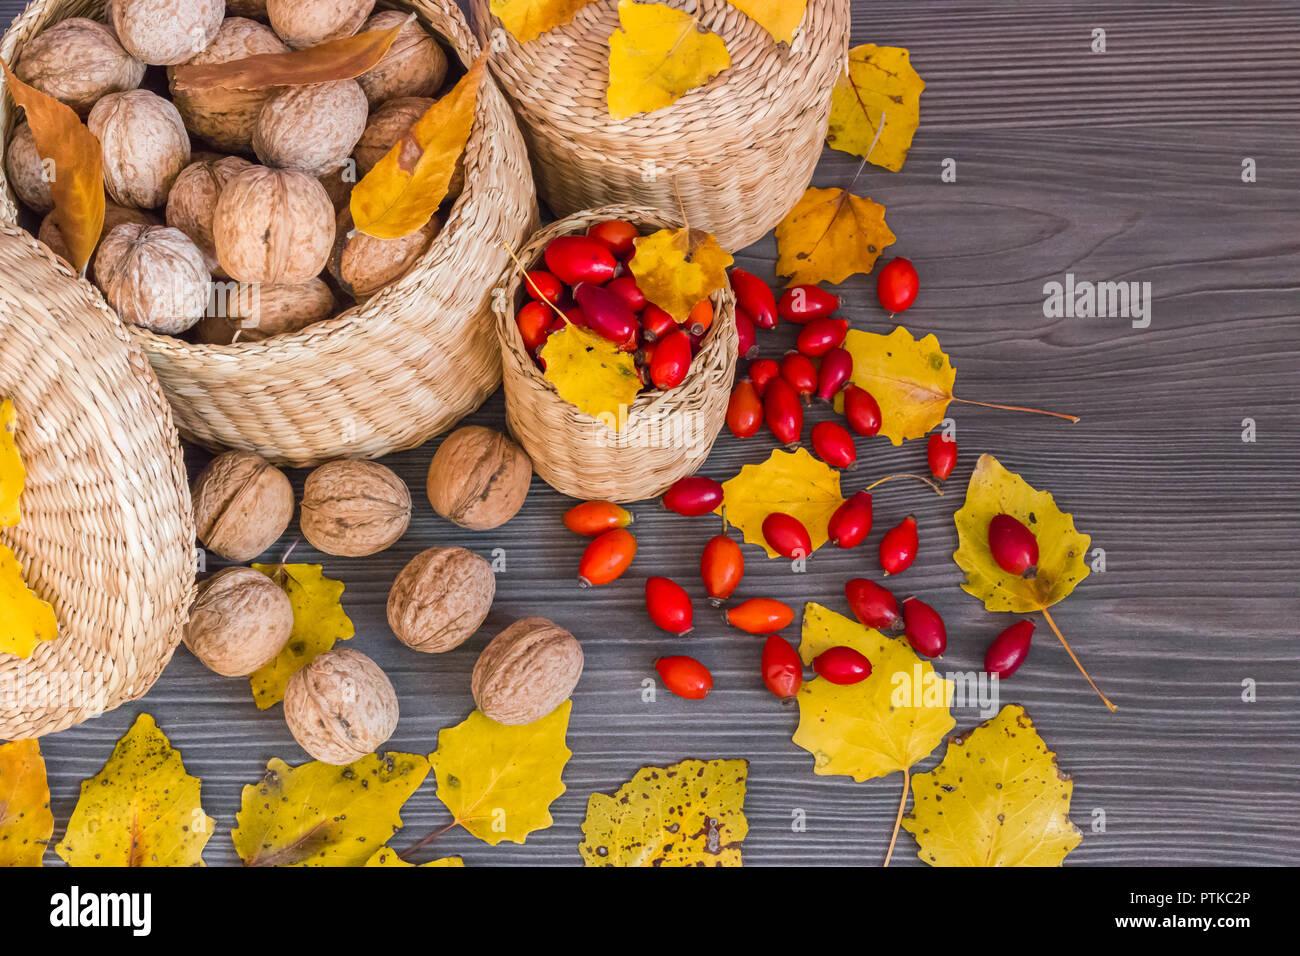 Walnüsse, Hagebutten und gelbe Blätter auf einer hölzernen Oberfläche, gesunde Nahrung aus der Natur, Konzept der Herbst Hintergrund Stockfoto